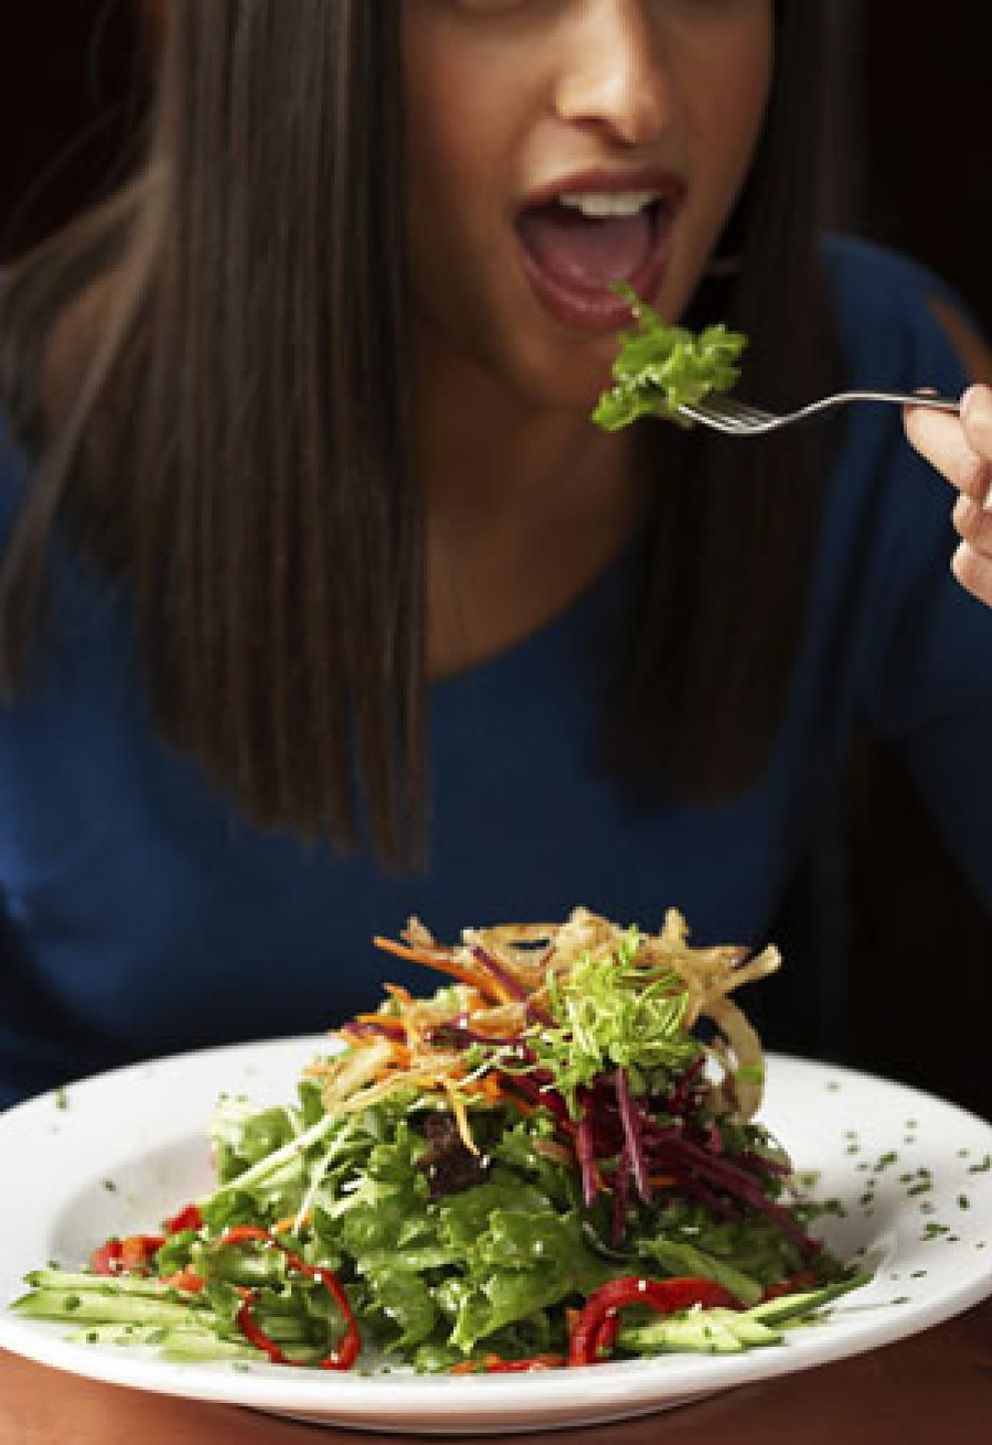 Foto: La dieta forking o cómo adelgazar comiendo sólo con tenedor